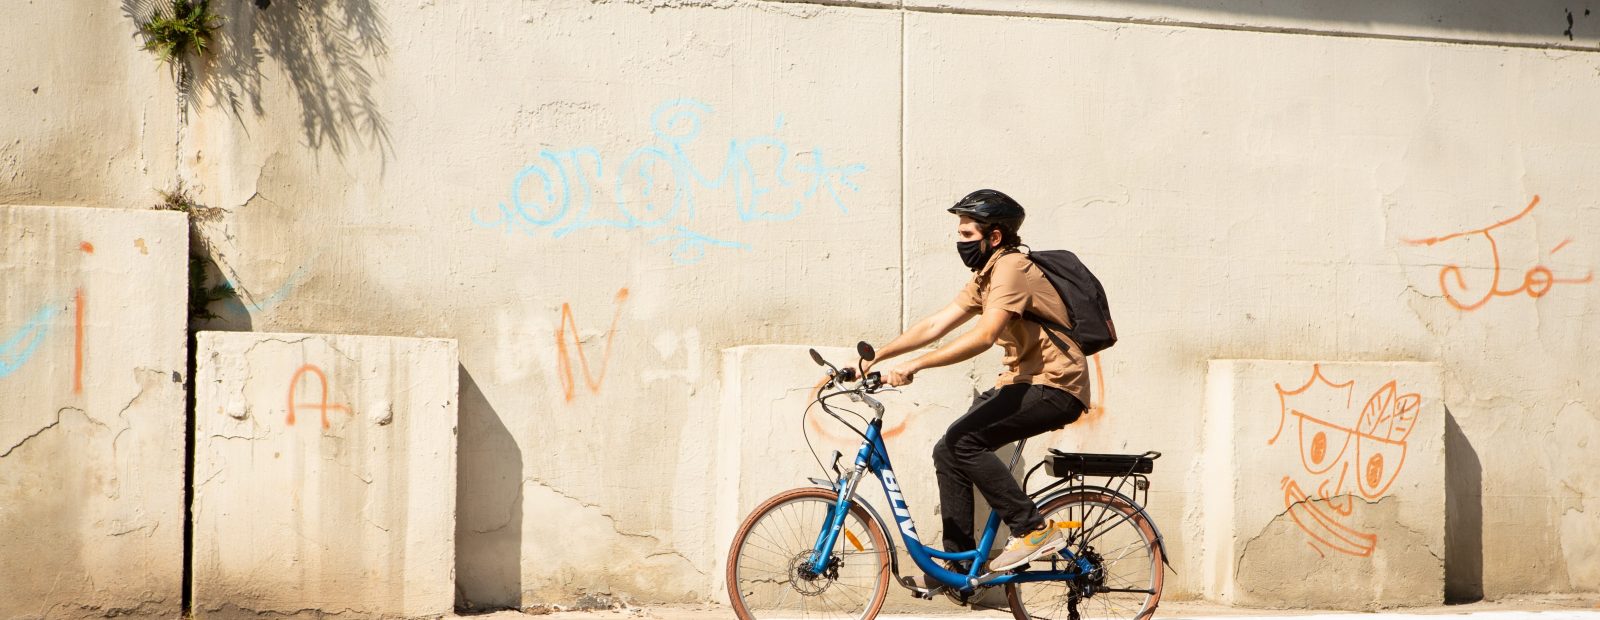 Especialistas dão dicas de como pedalar de modo seguro em São Paulo